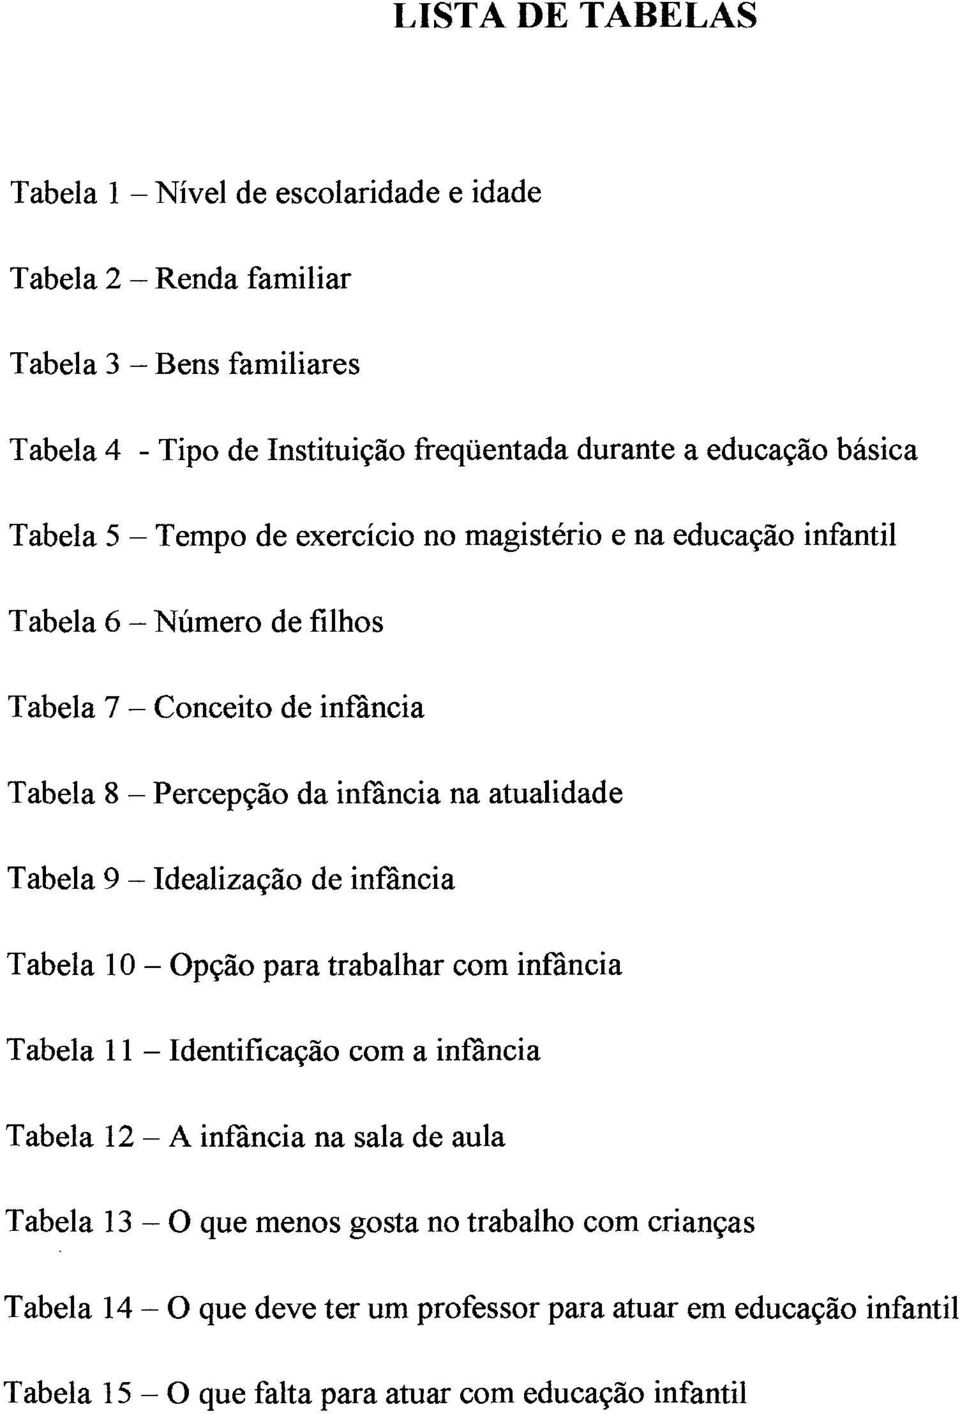 atualidade Tabela 9 - Idealização de infância Tabela 10 - Opção para trabalhar com infância Tabela 11 - Identificação com a infância Tabela 12 - A infância na sala de aula